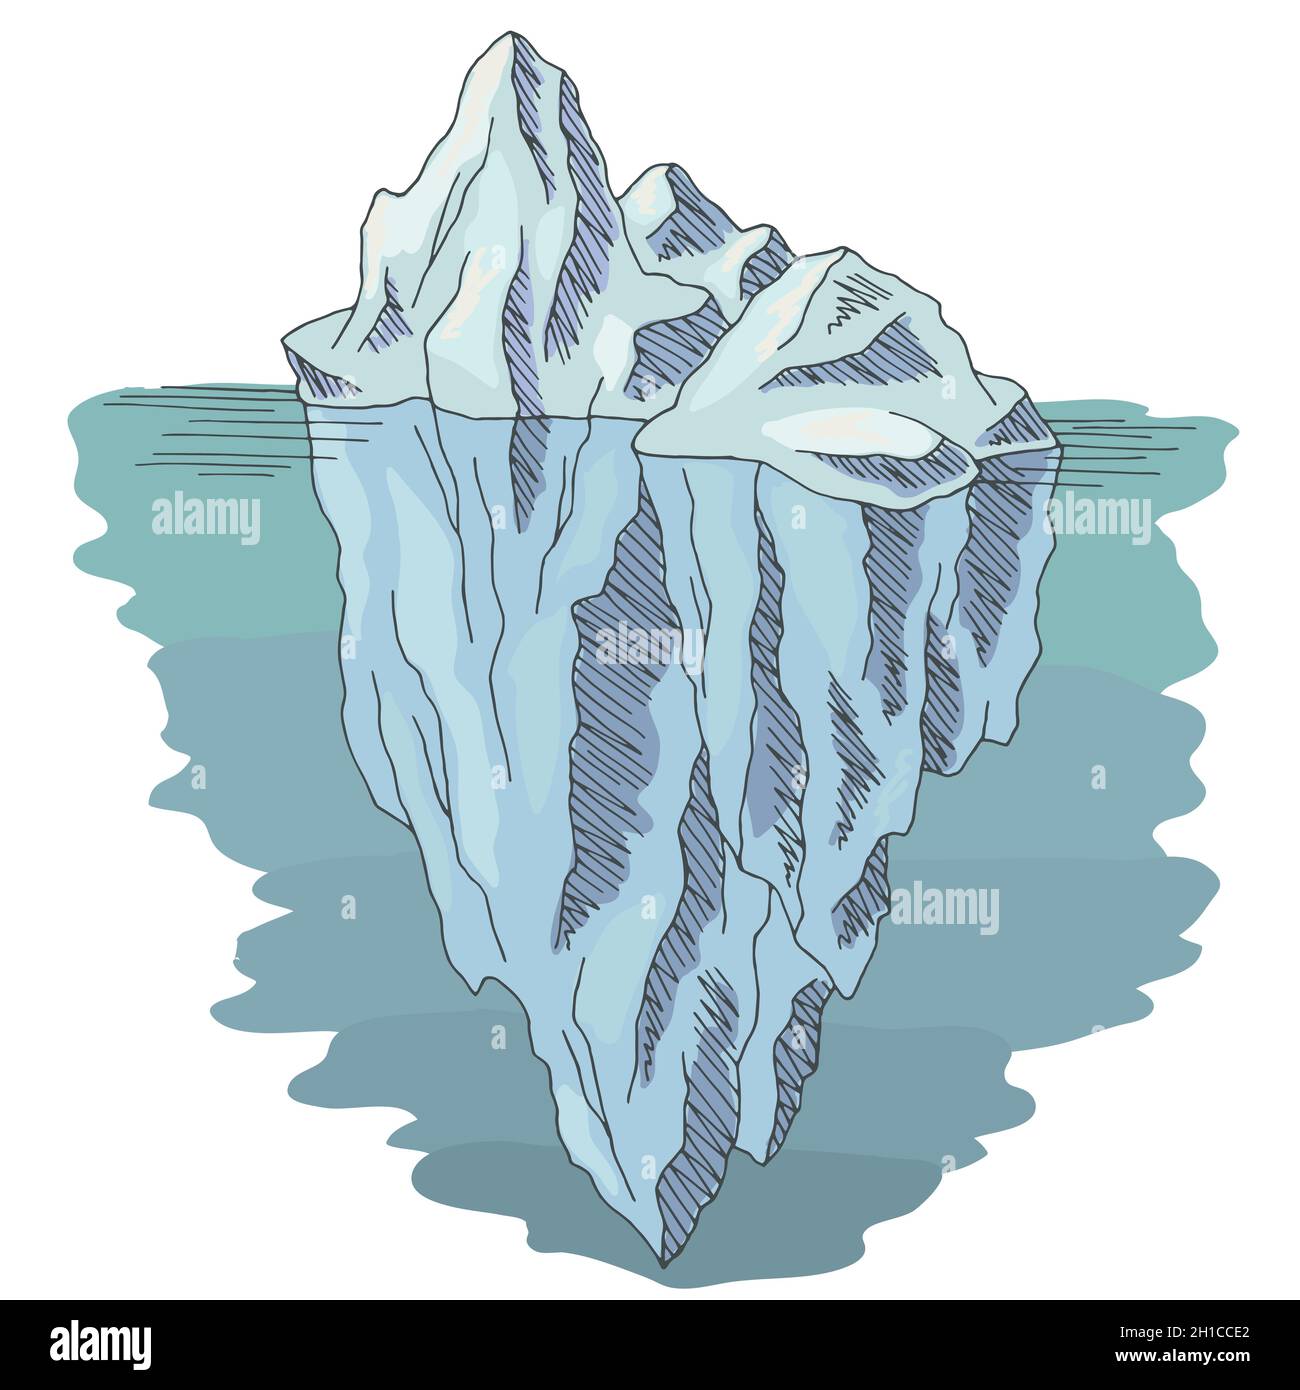 Vecteur d'illustration d'esquisse isolé couleur graphique iceberg Illustration de Vecteur